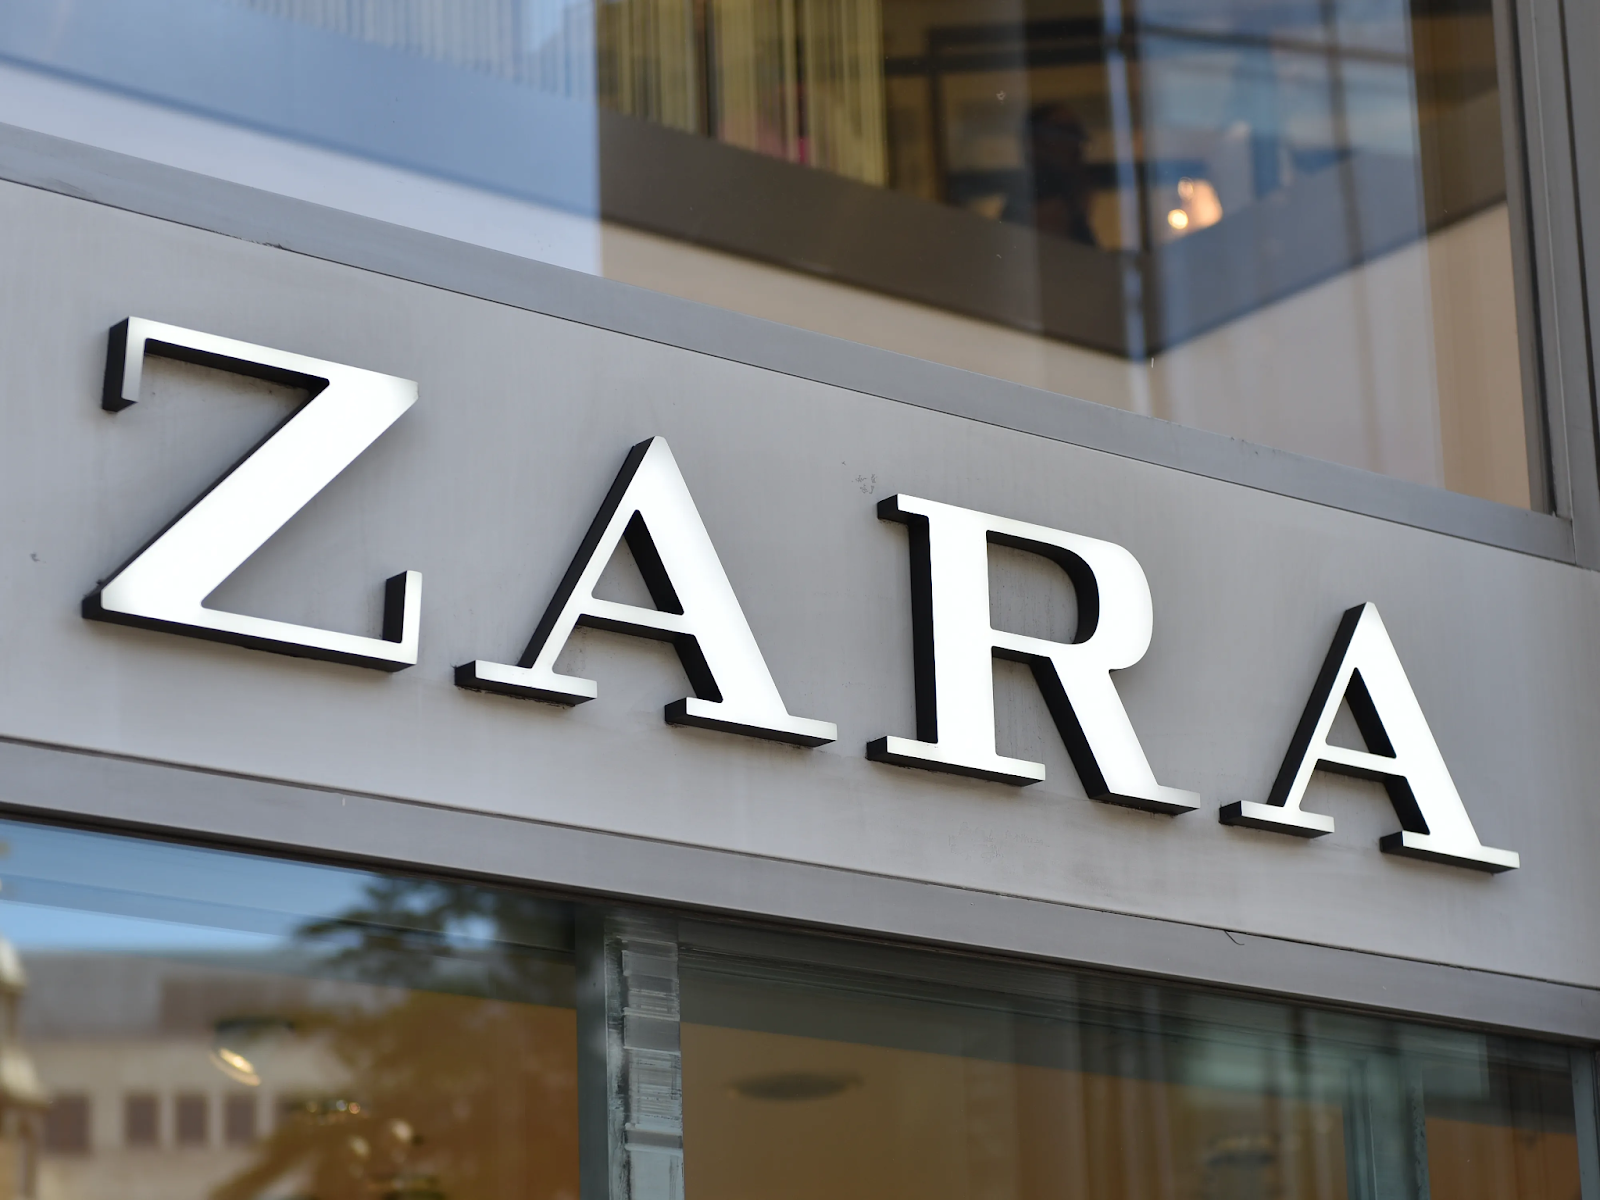 Exemples de vente au détail Zara Omnicanal